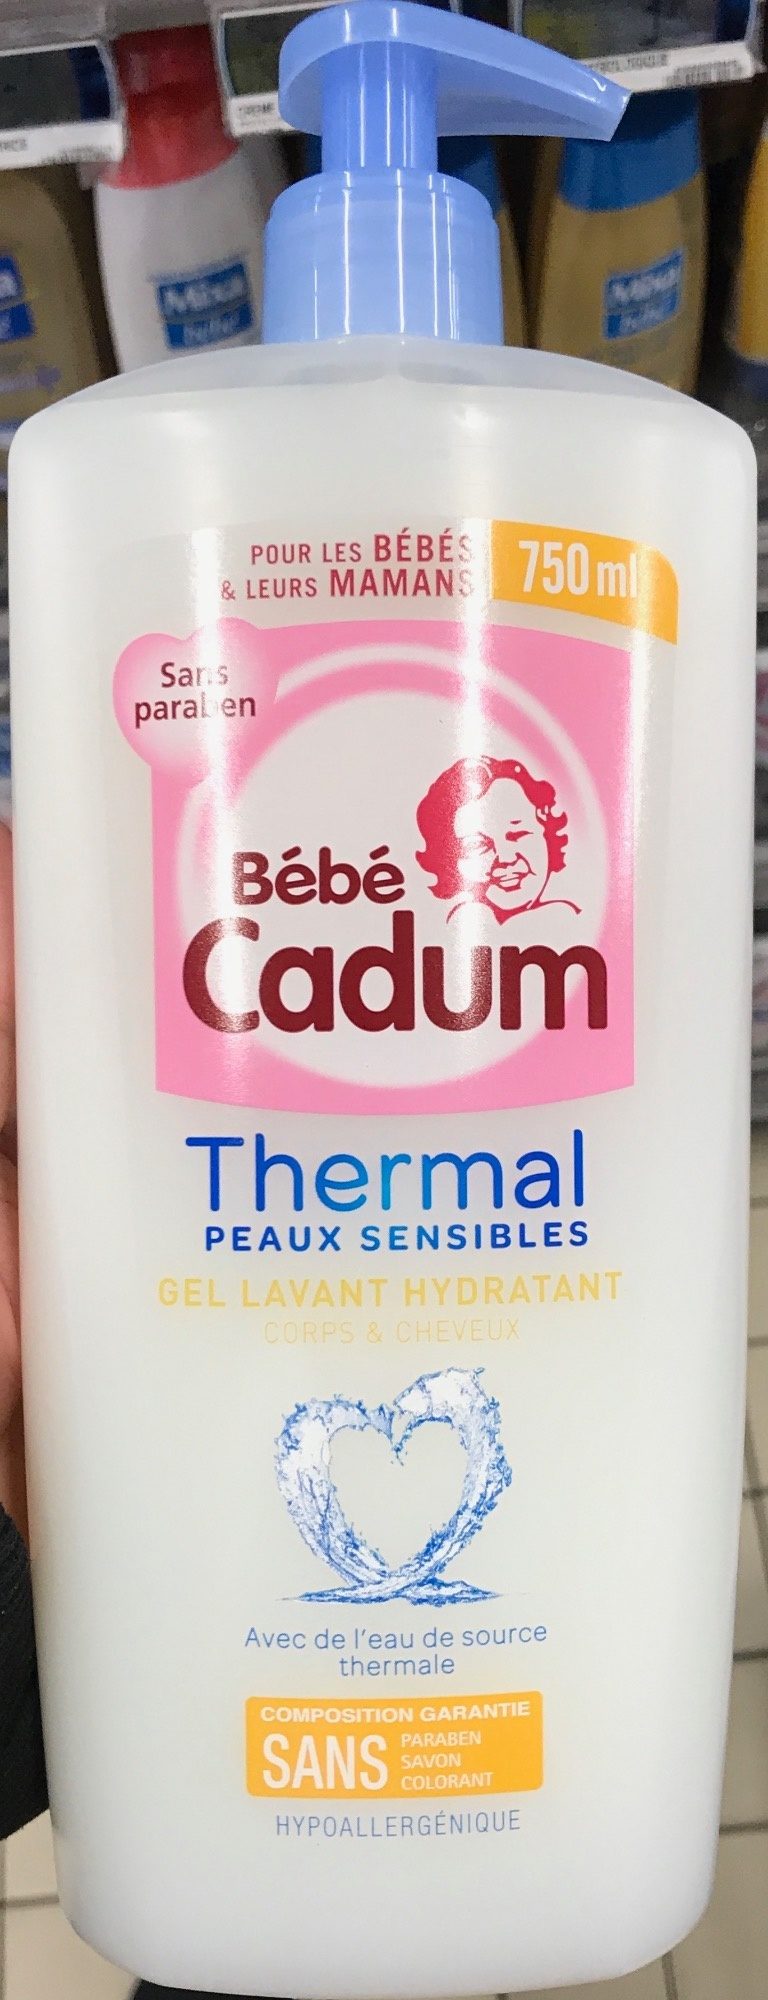 Thermal Peaux Sensibles Gel lavant hydratant - Produit - fr